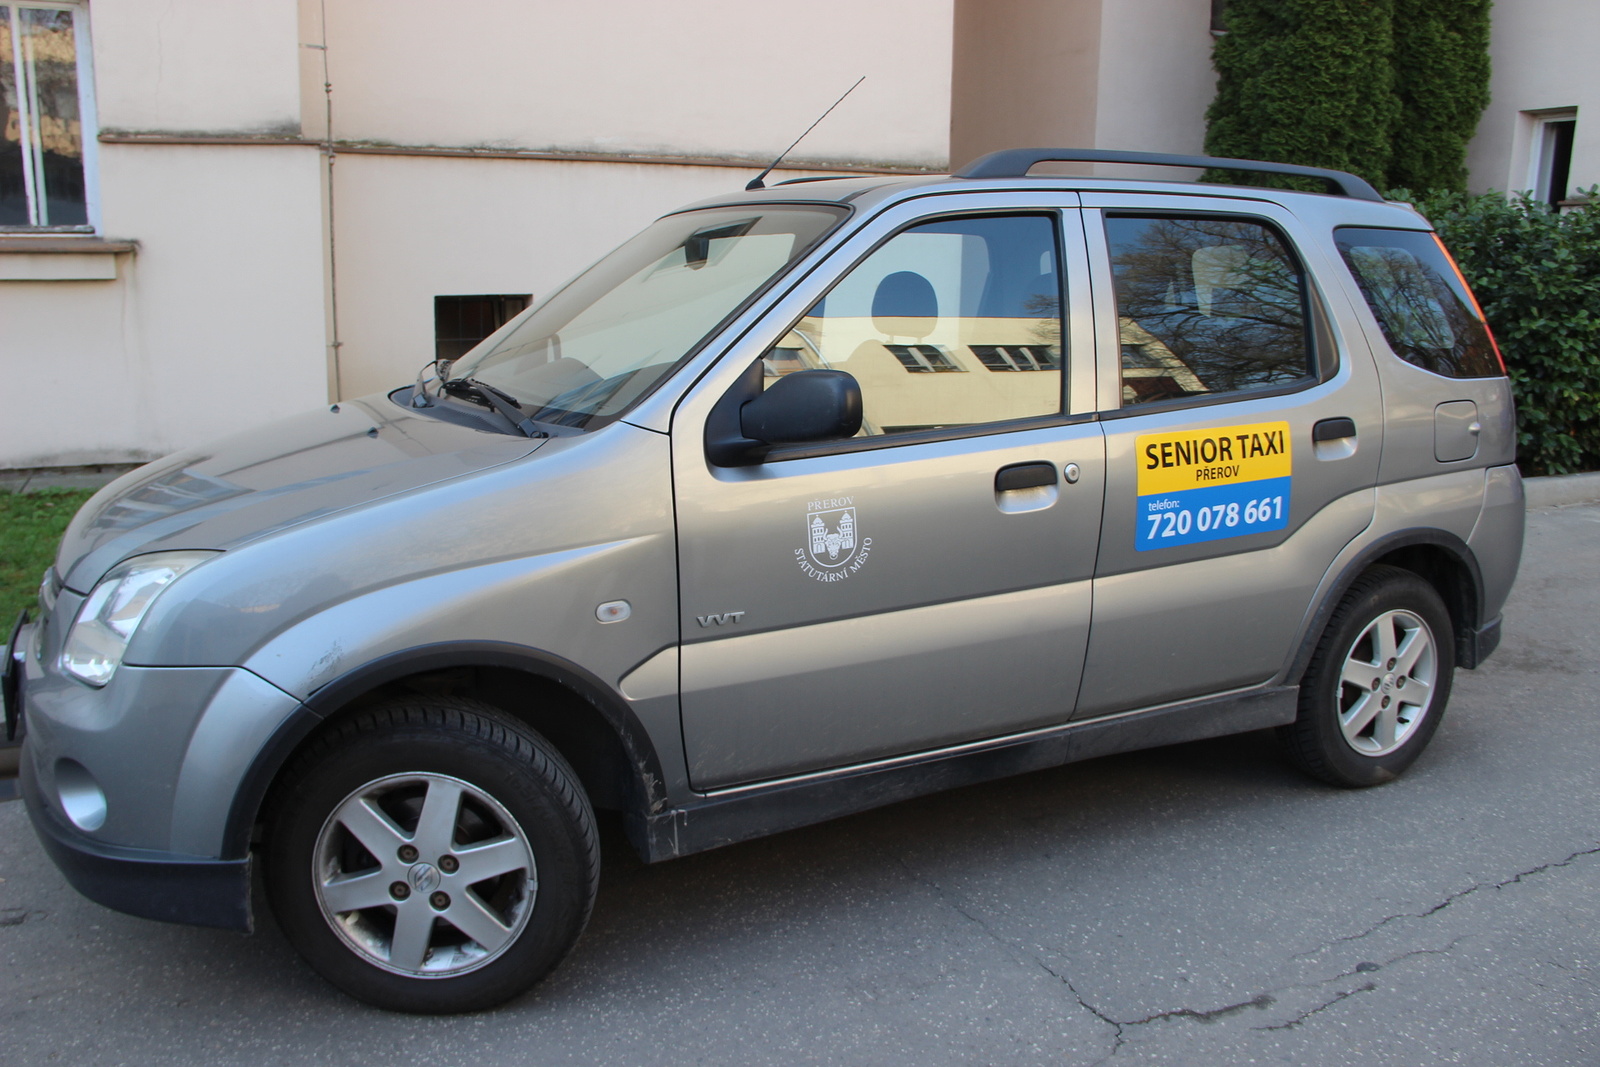 Senior taxi v Přerově se znovu rozjede - Přerovský deník